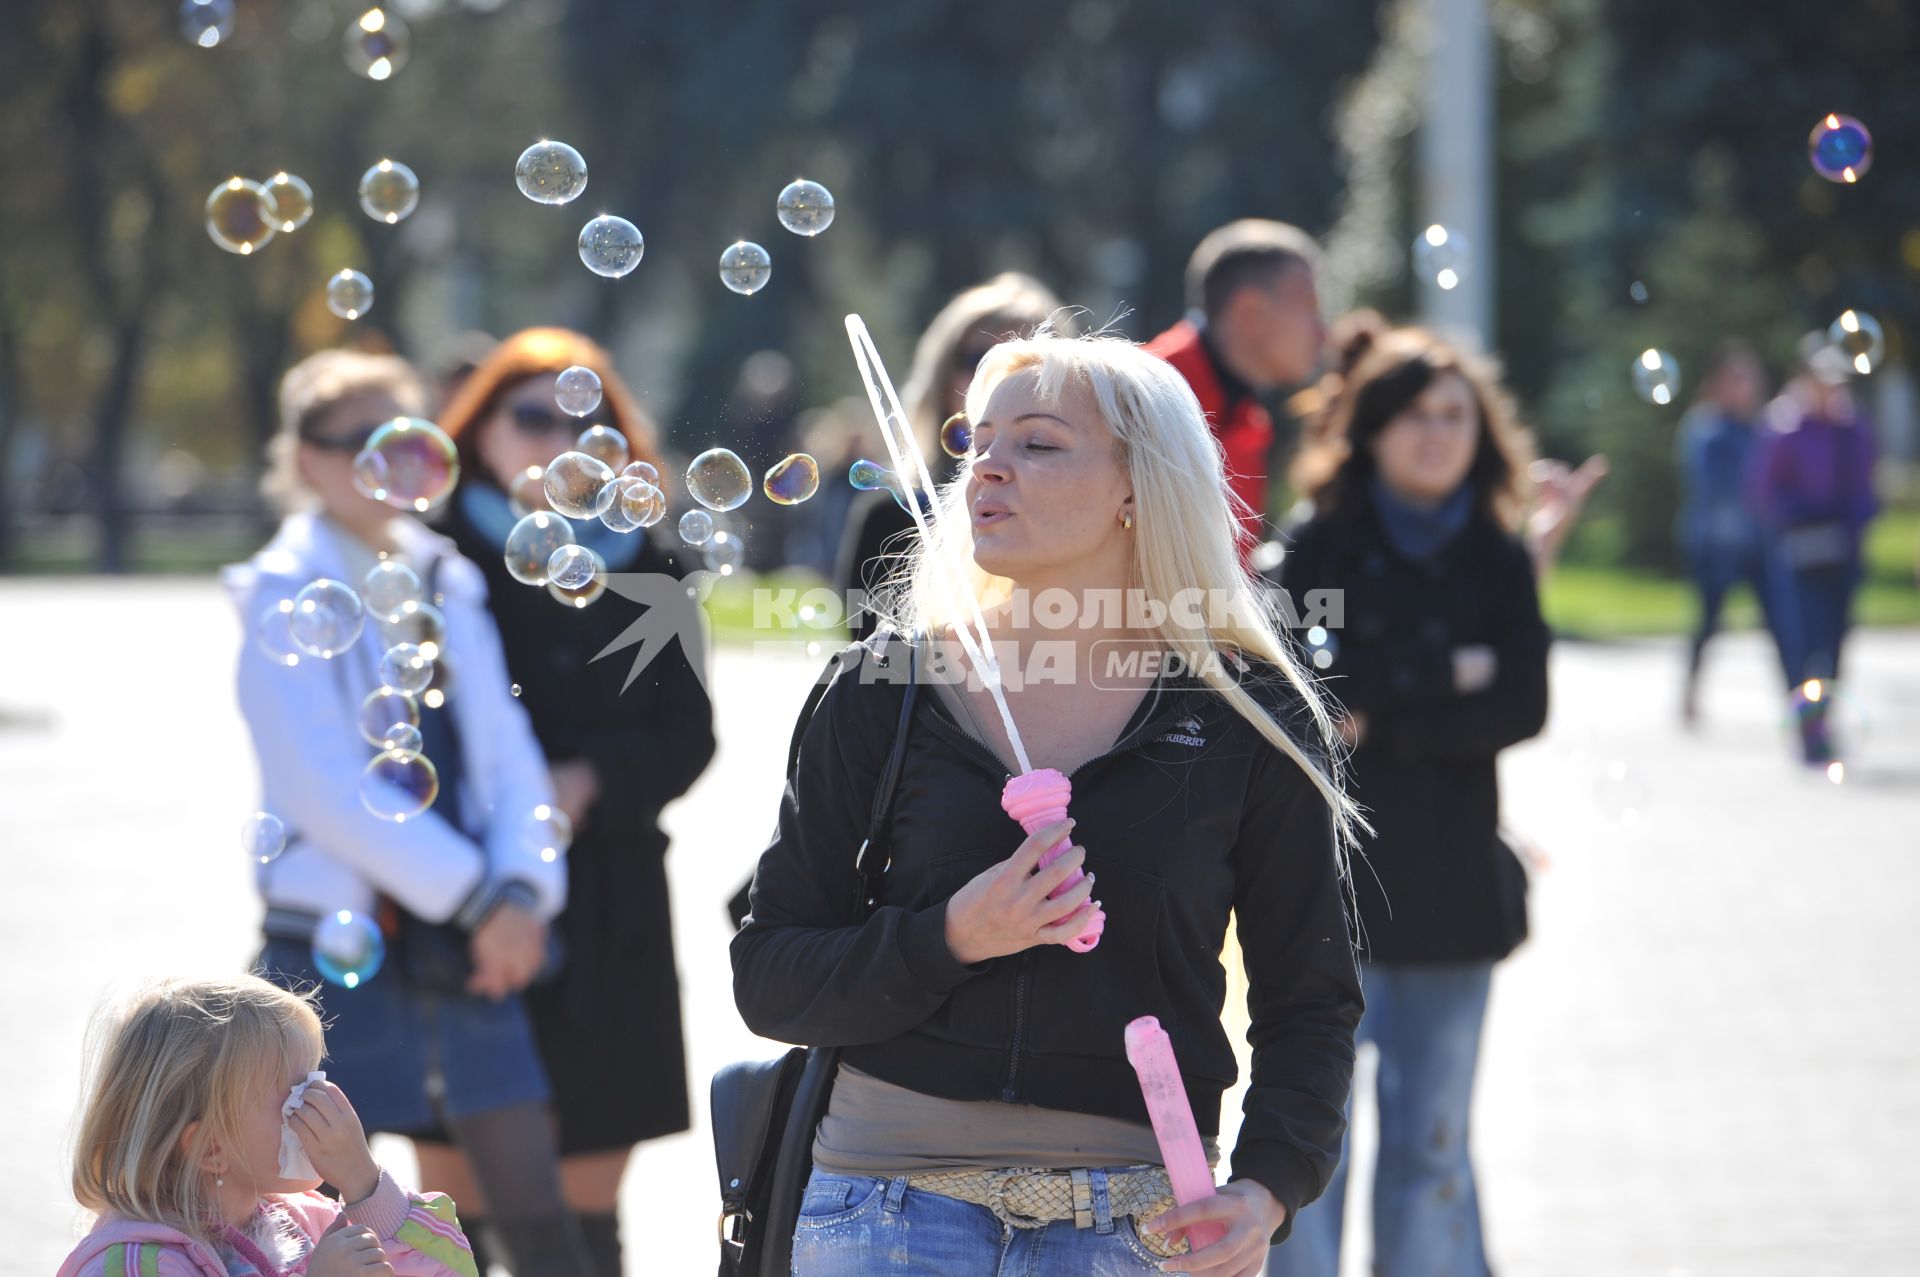 Донецк. Праздник в честь полугодичного существования Донецкой Народной Республики. На снимке: девушка пускает мыльные пузыри.